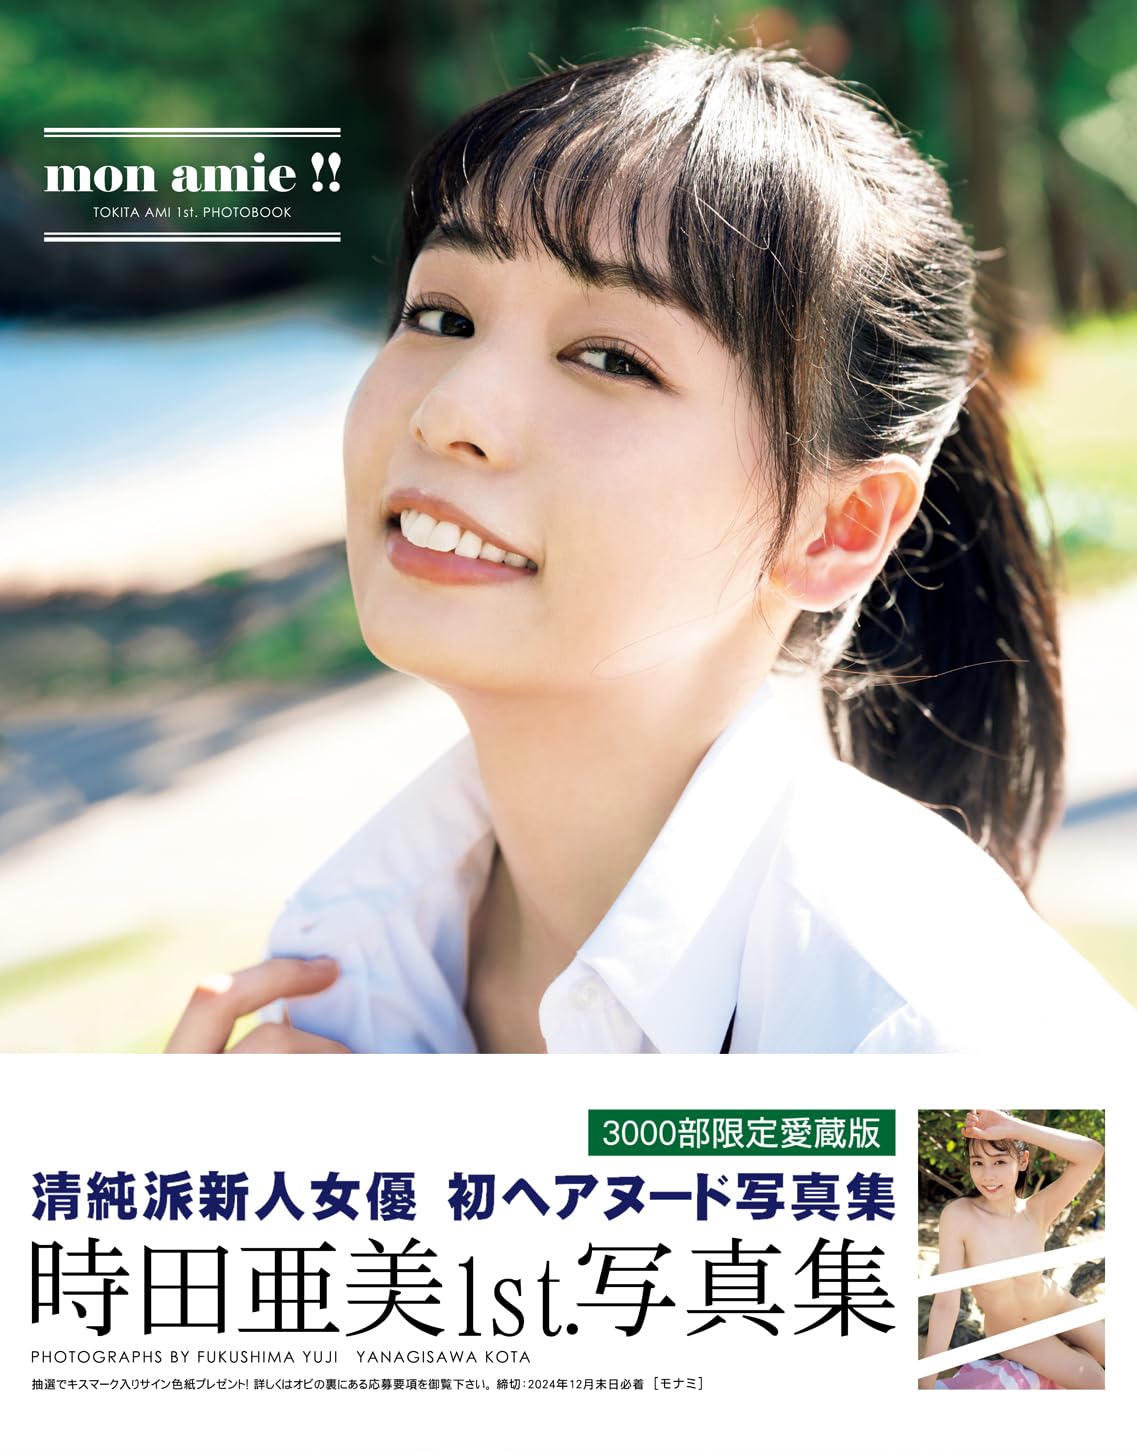 Ami Tokita 1st Photo Book "mon amie !!"